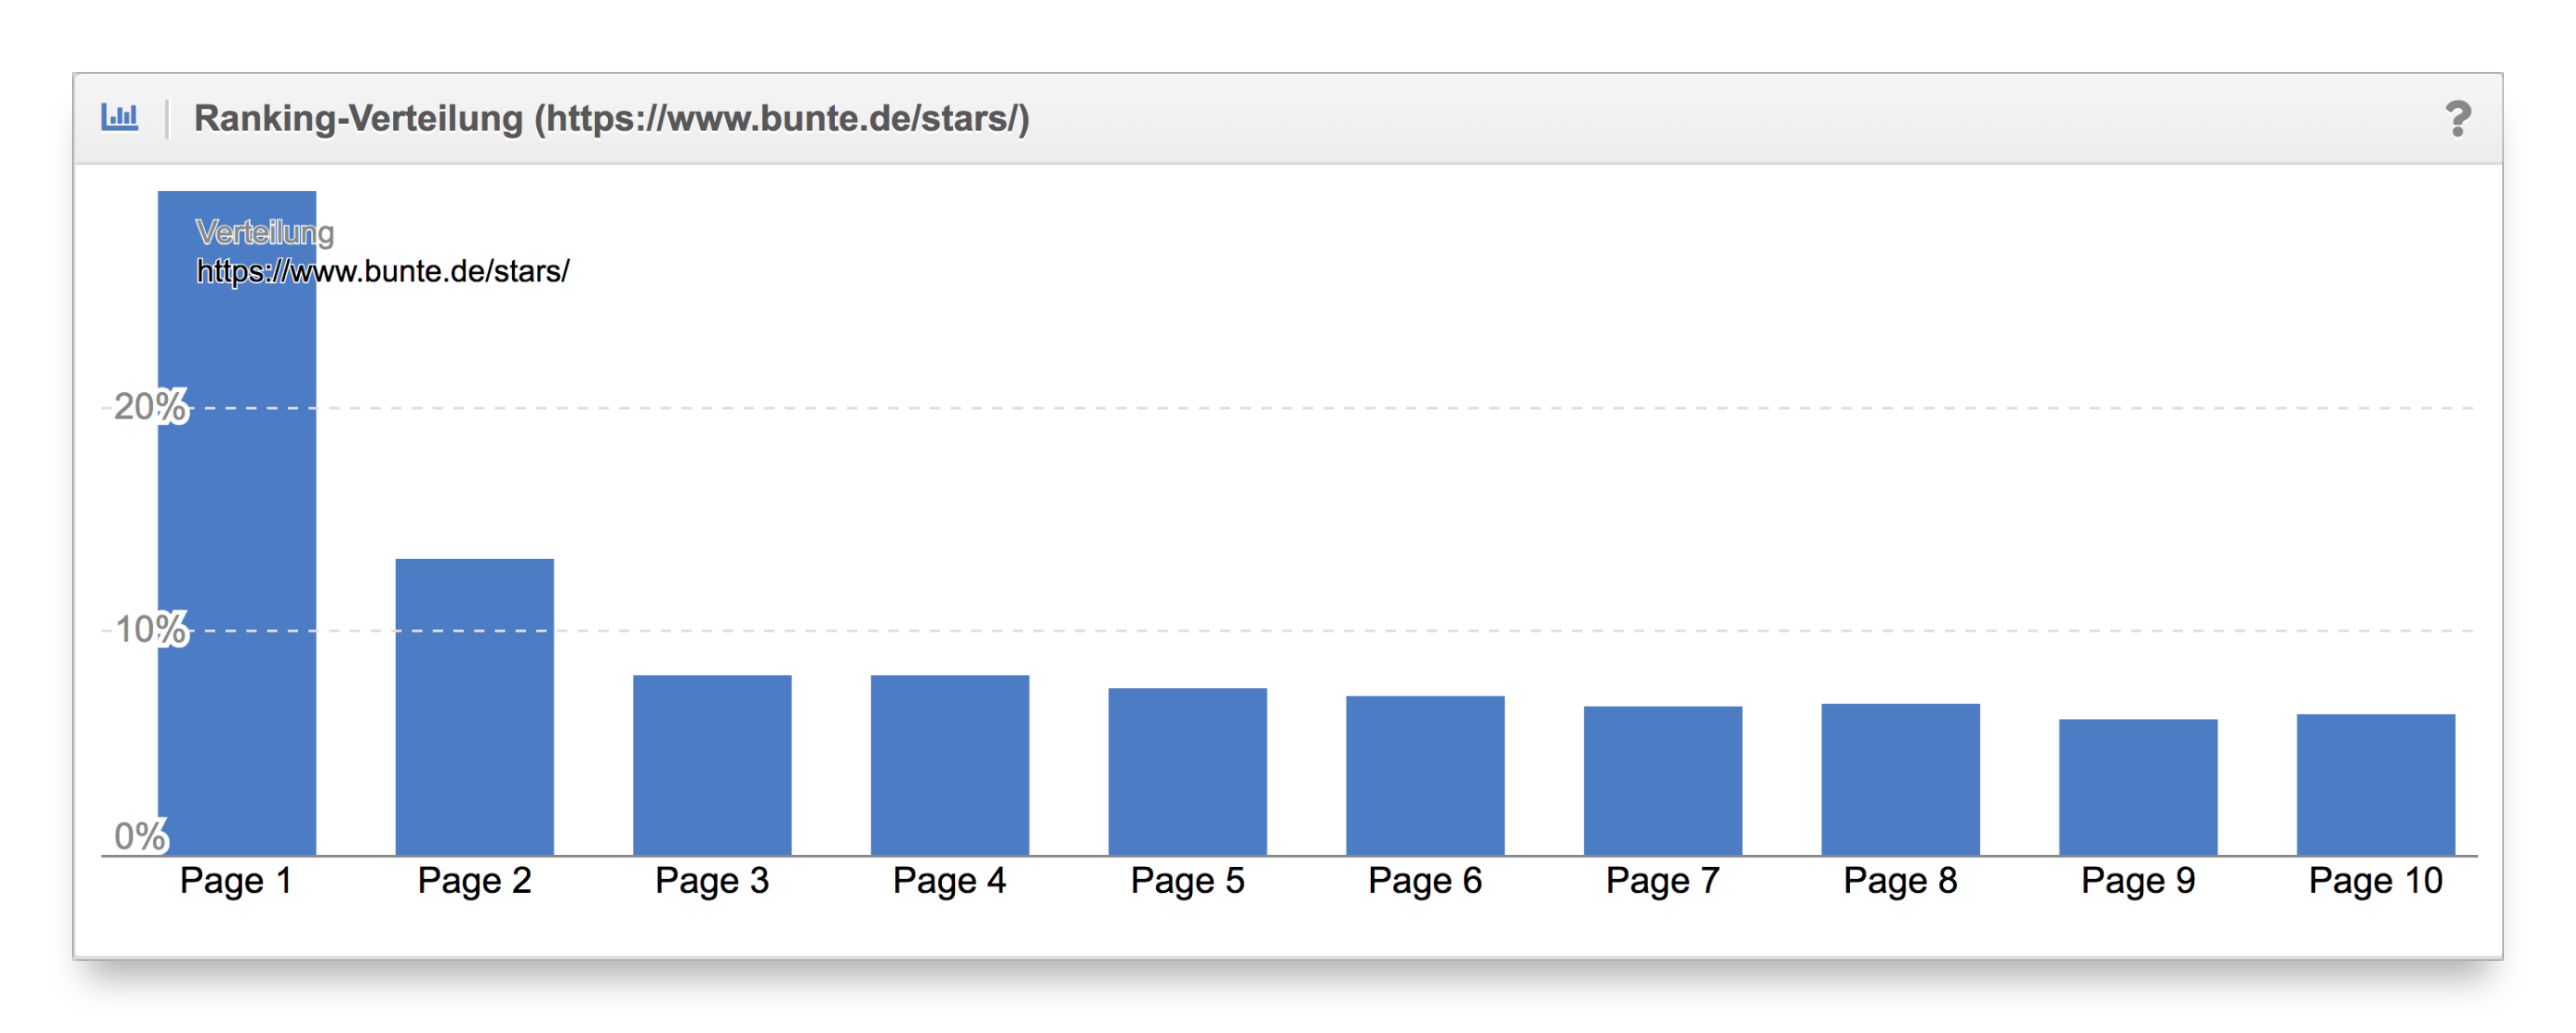 Vergleich Ranking-Verteilung Content-Formate bunte.de